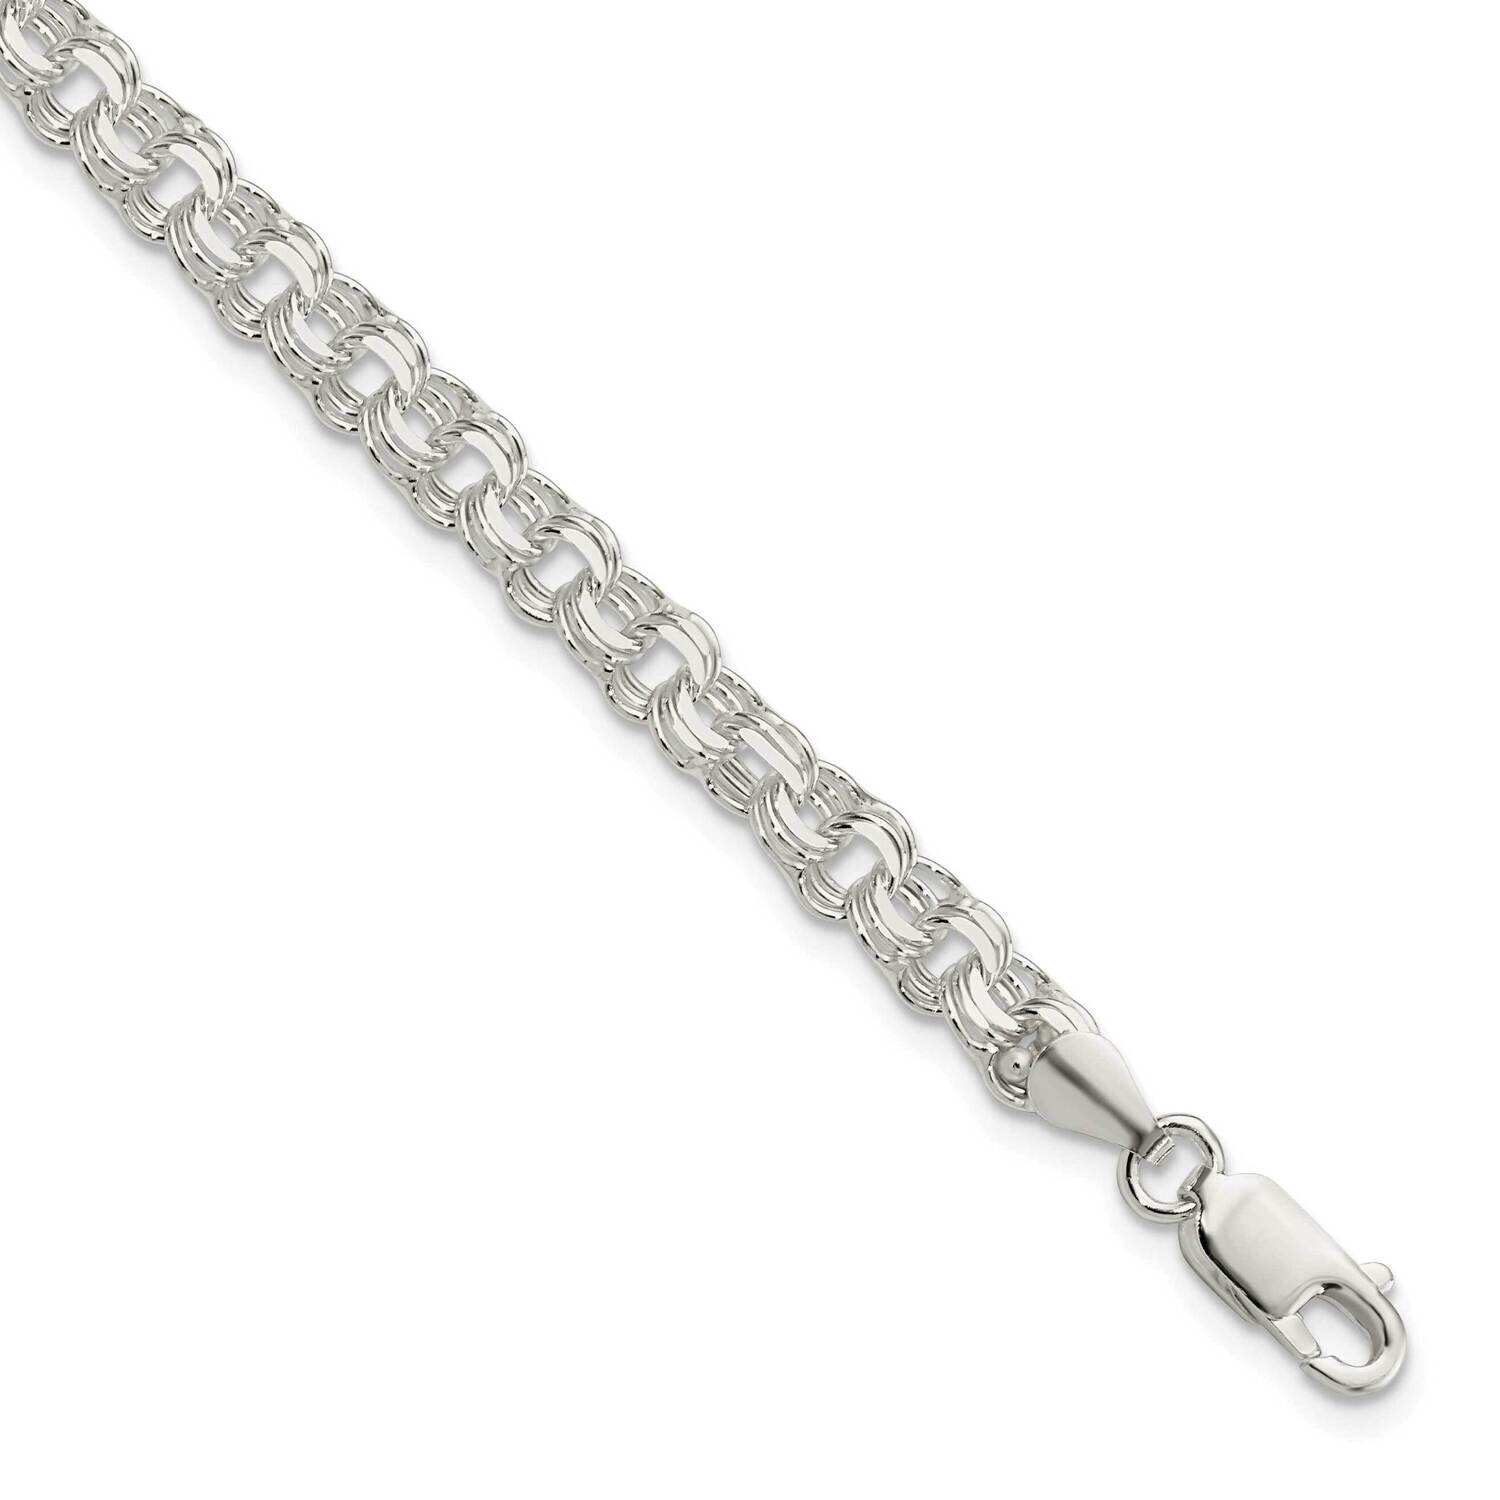 5mm Triple Link Charm Bracelet Sterling Silver Polished QG5830-8